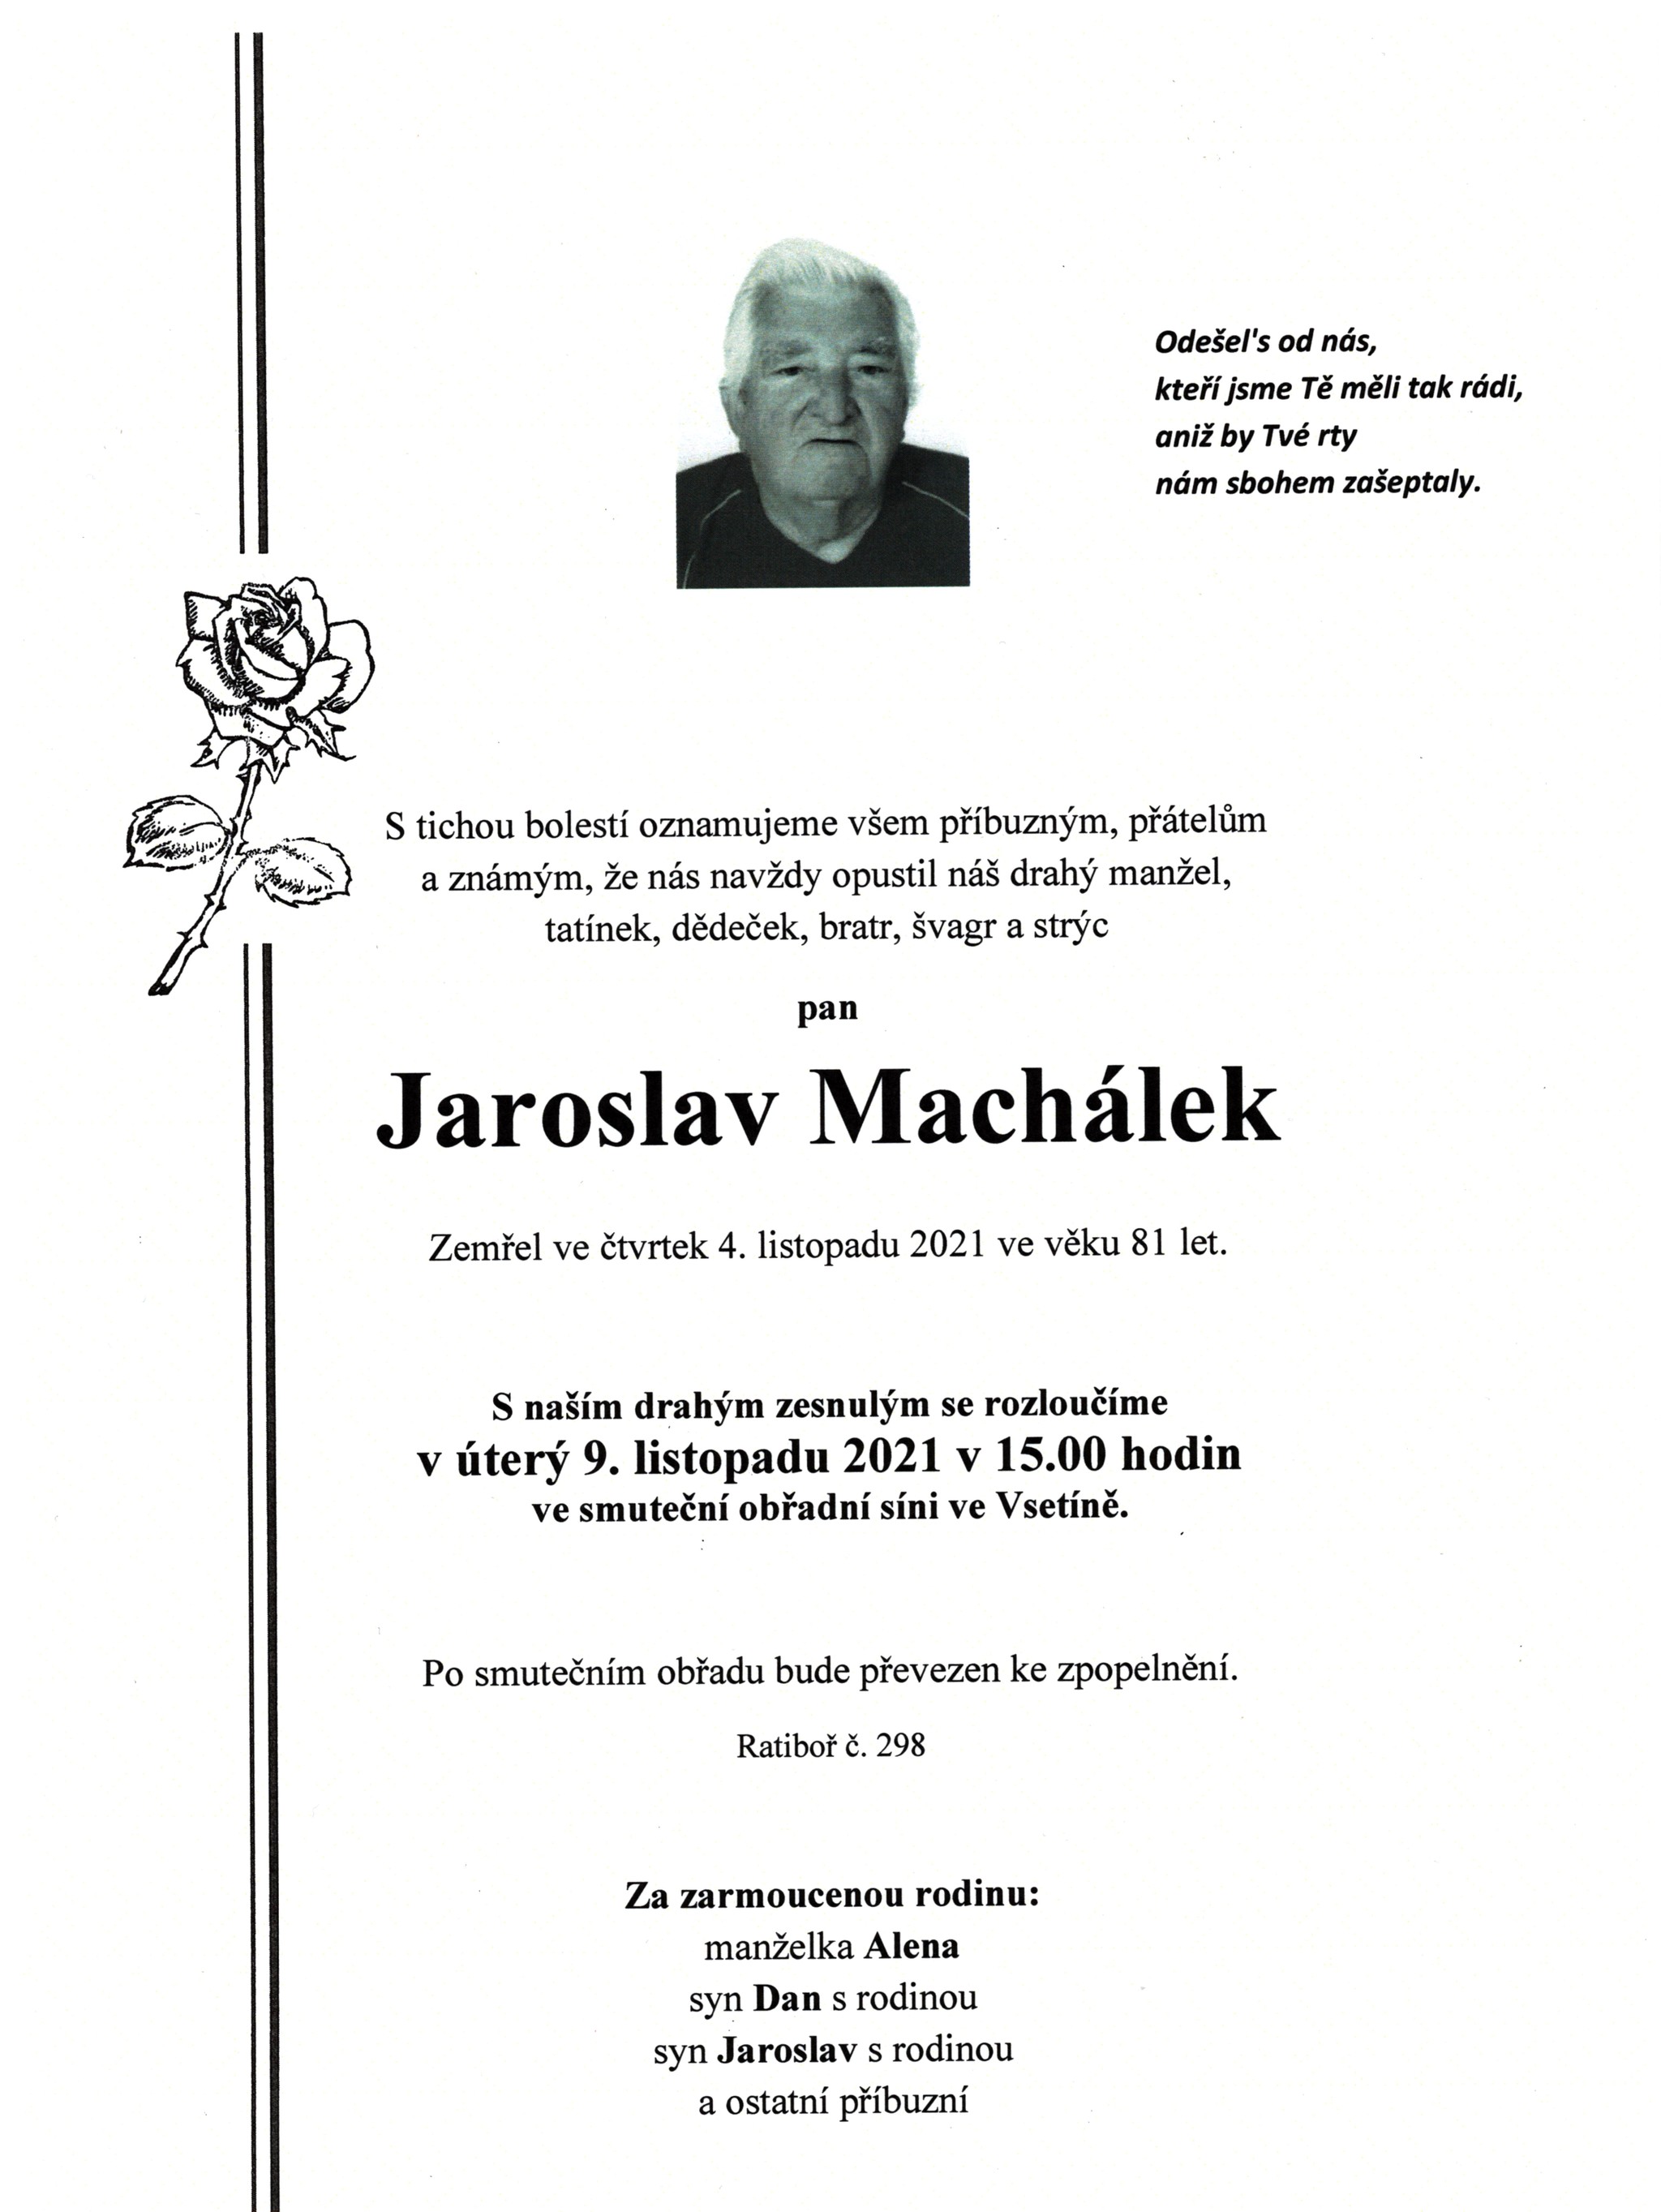 Jaroslav Machálek